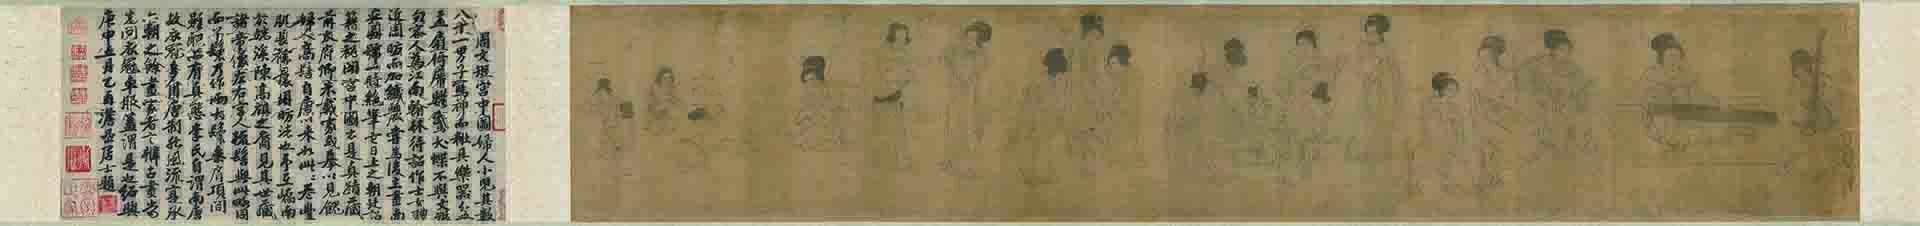 五代 南唐 周文矩 宫中图卷绢本285 x 1686cm